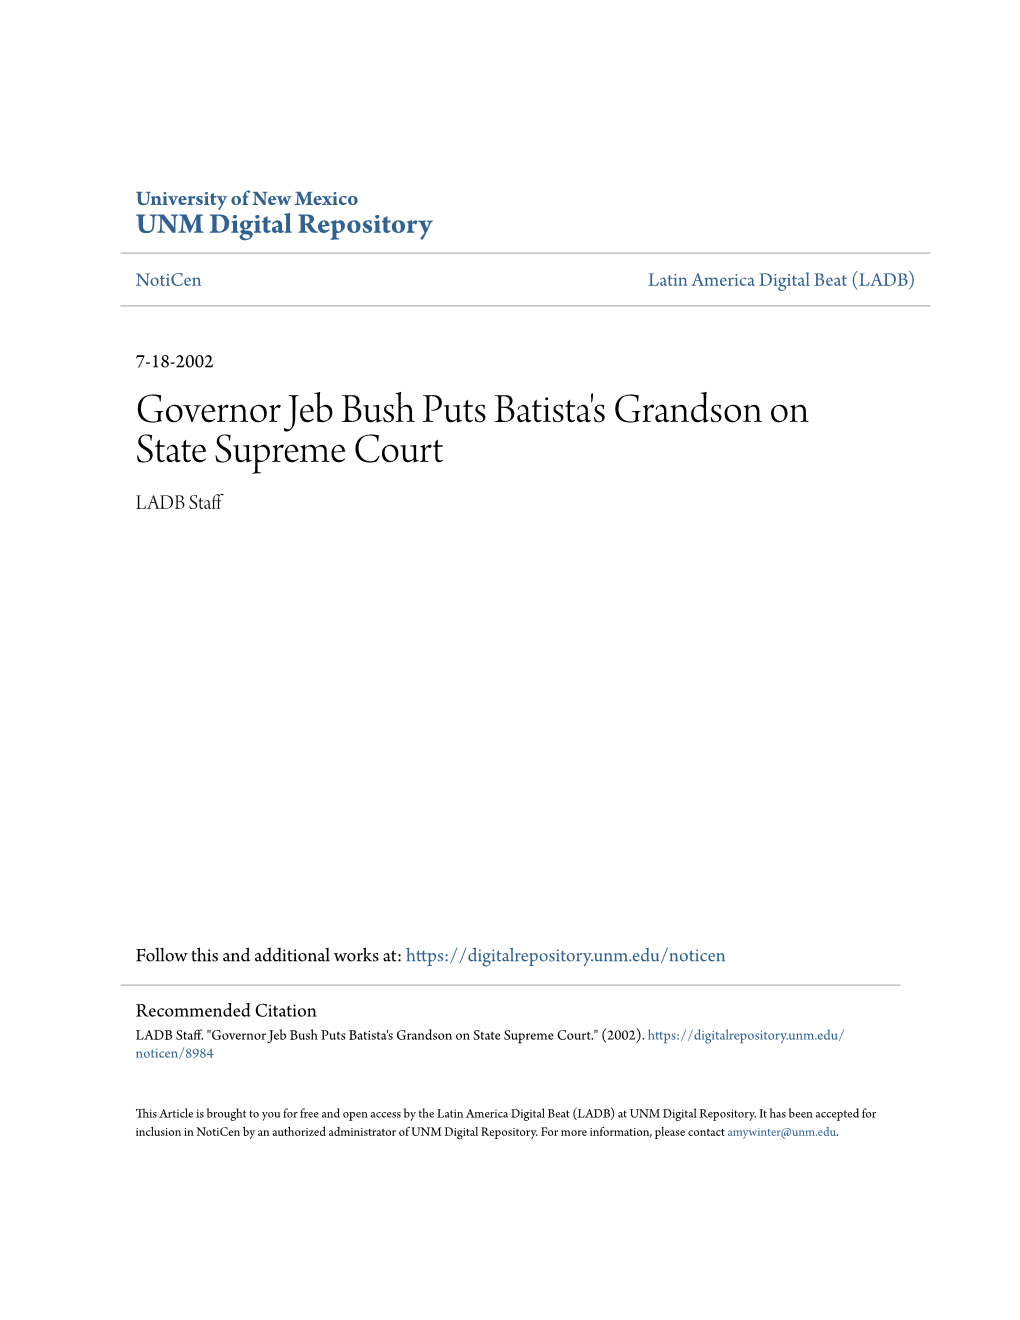 Governor Jeb Bush Puts Batista's Grandson on State Supreme Court LADB Staff